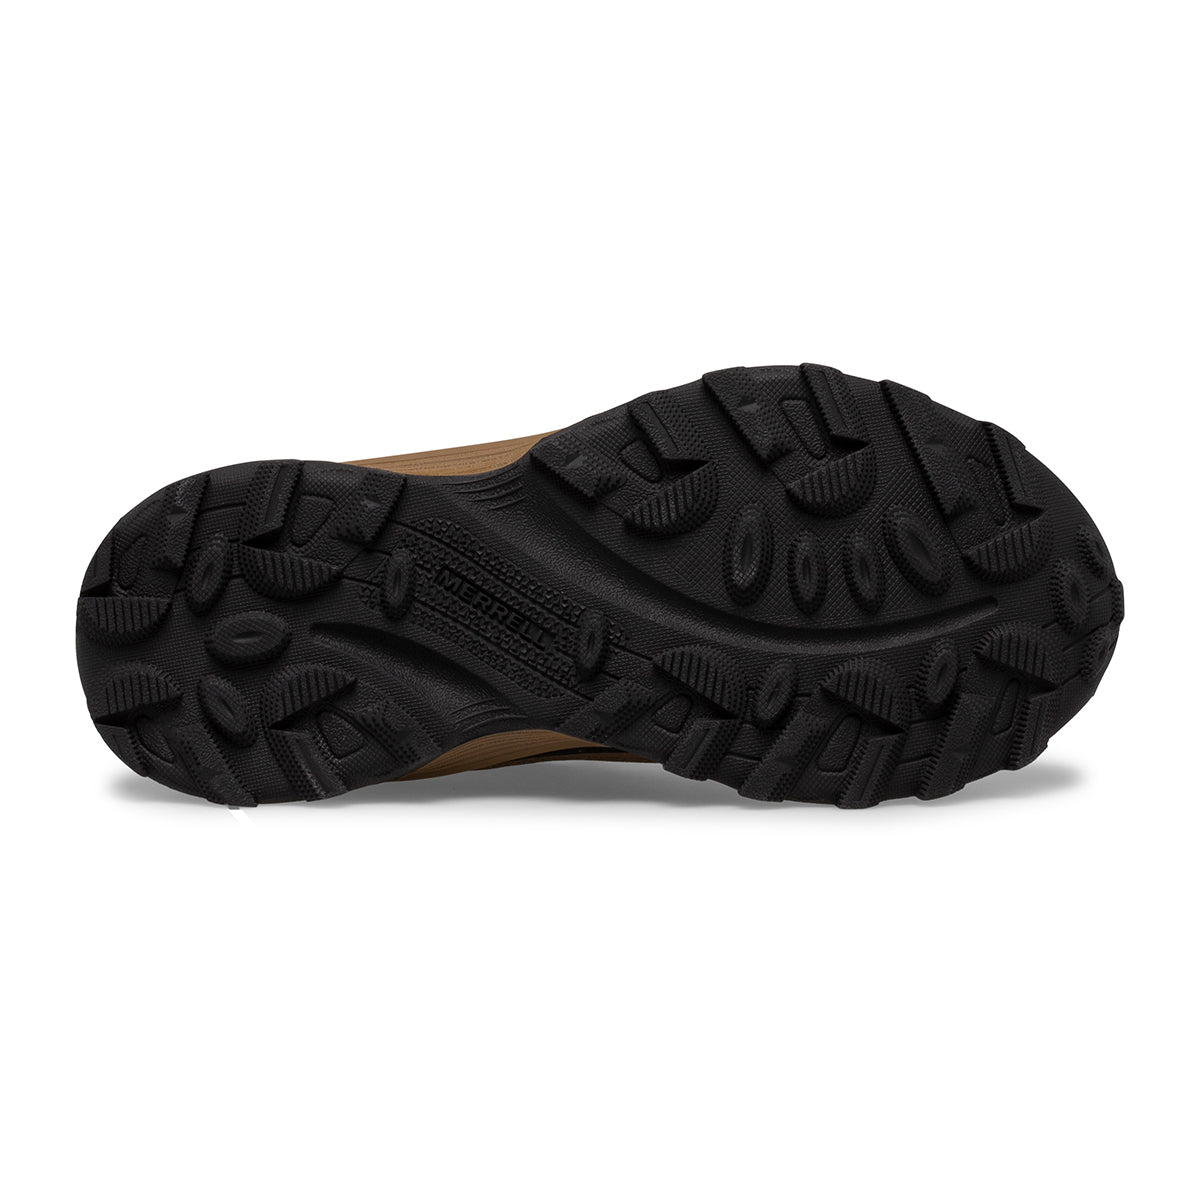 Moab Speed Low Waterproof Sneaker Walnut